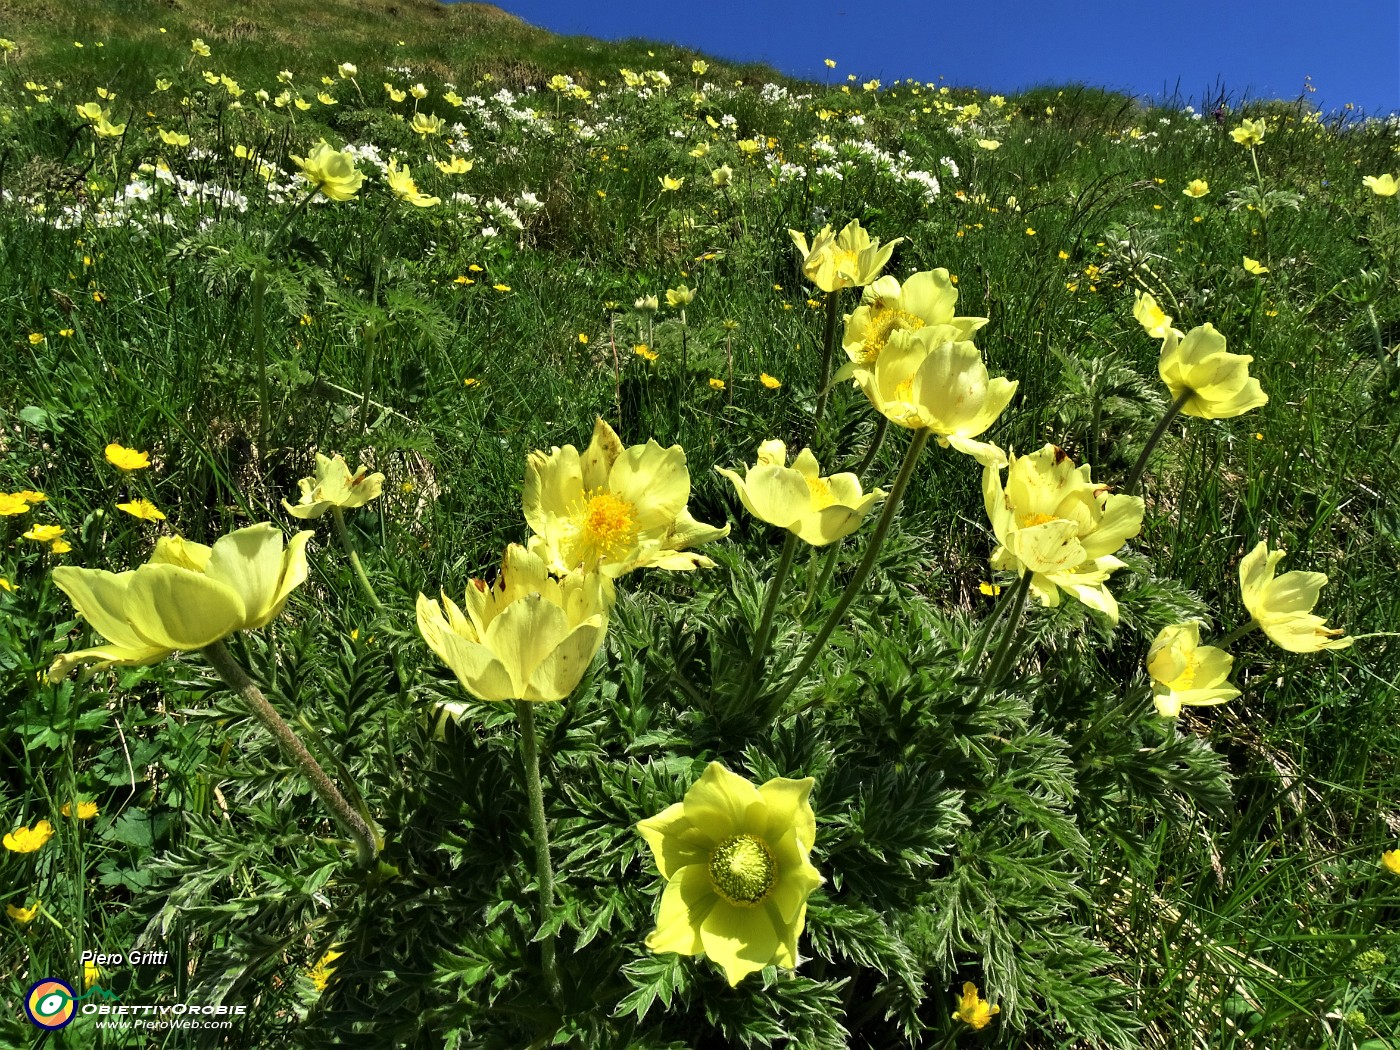 01 Estese fioriture di gialla Pulsatilla alpina sulphurea (Anemone sulfureo) e bianco Anemonastrum narcissiflorum (Anemone narcissino).JPG